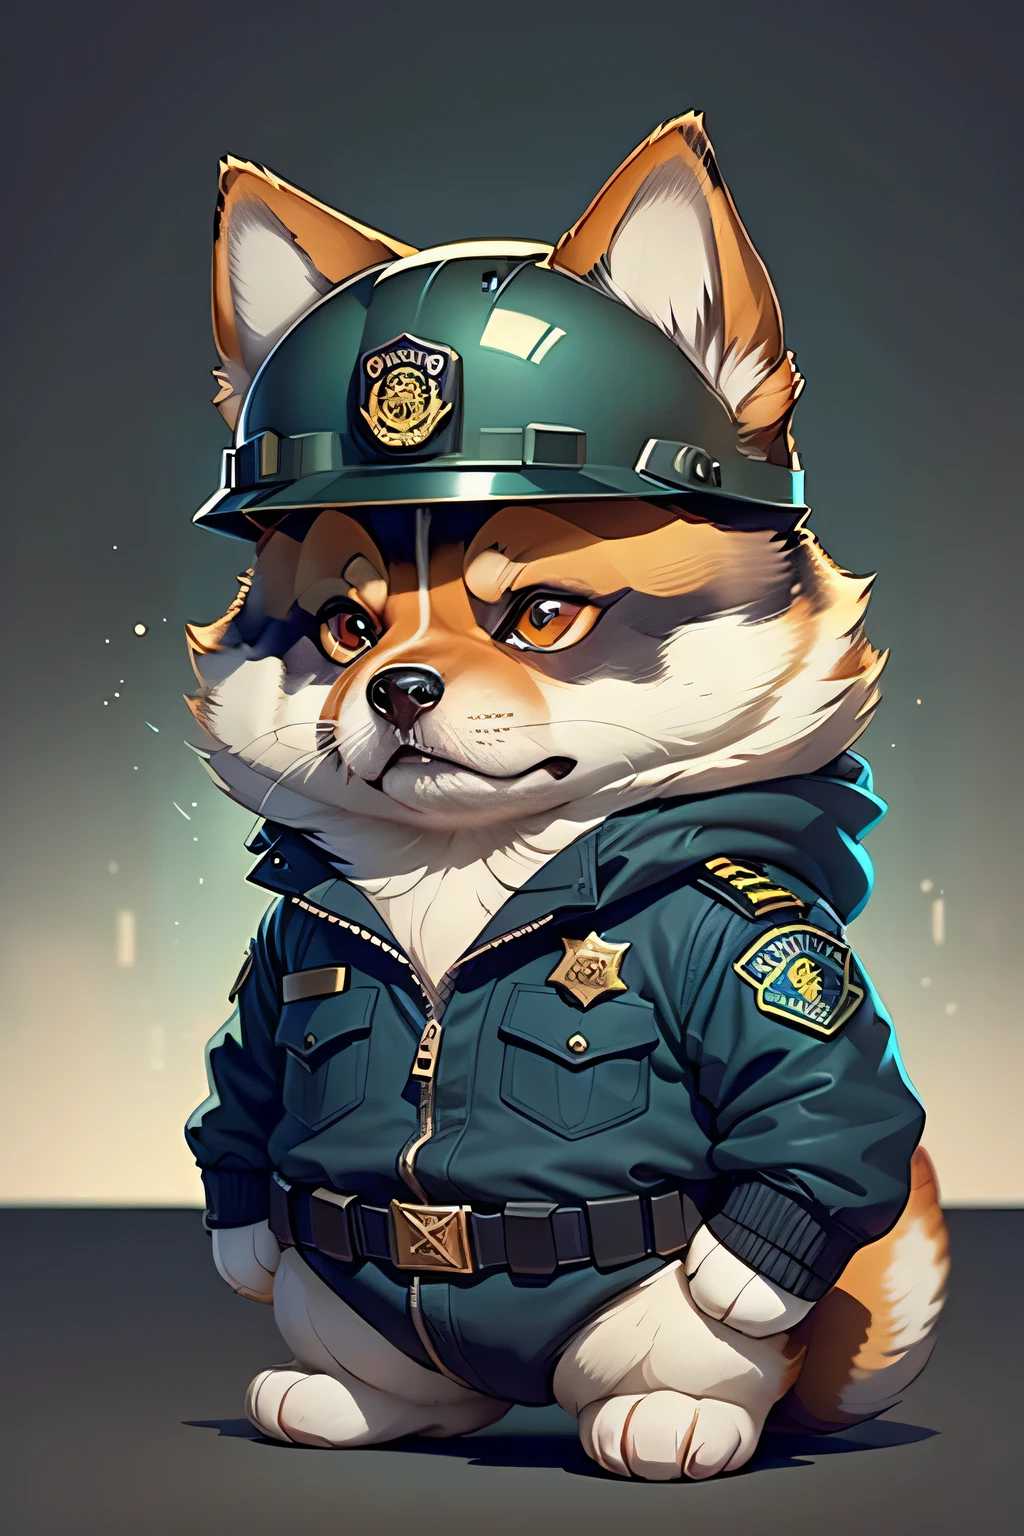 クソ, アメリカの警察の制服とヘルメットを着用した漫画の柴犬（髪は黒です、柴犬の外見的特徴）